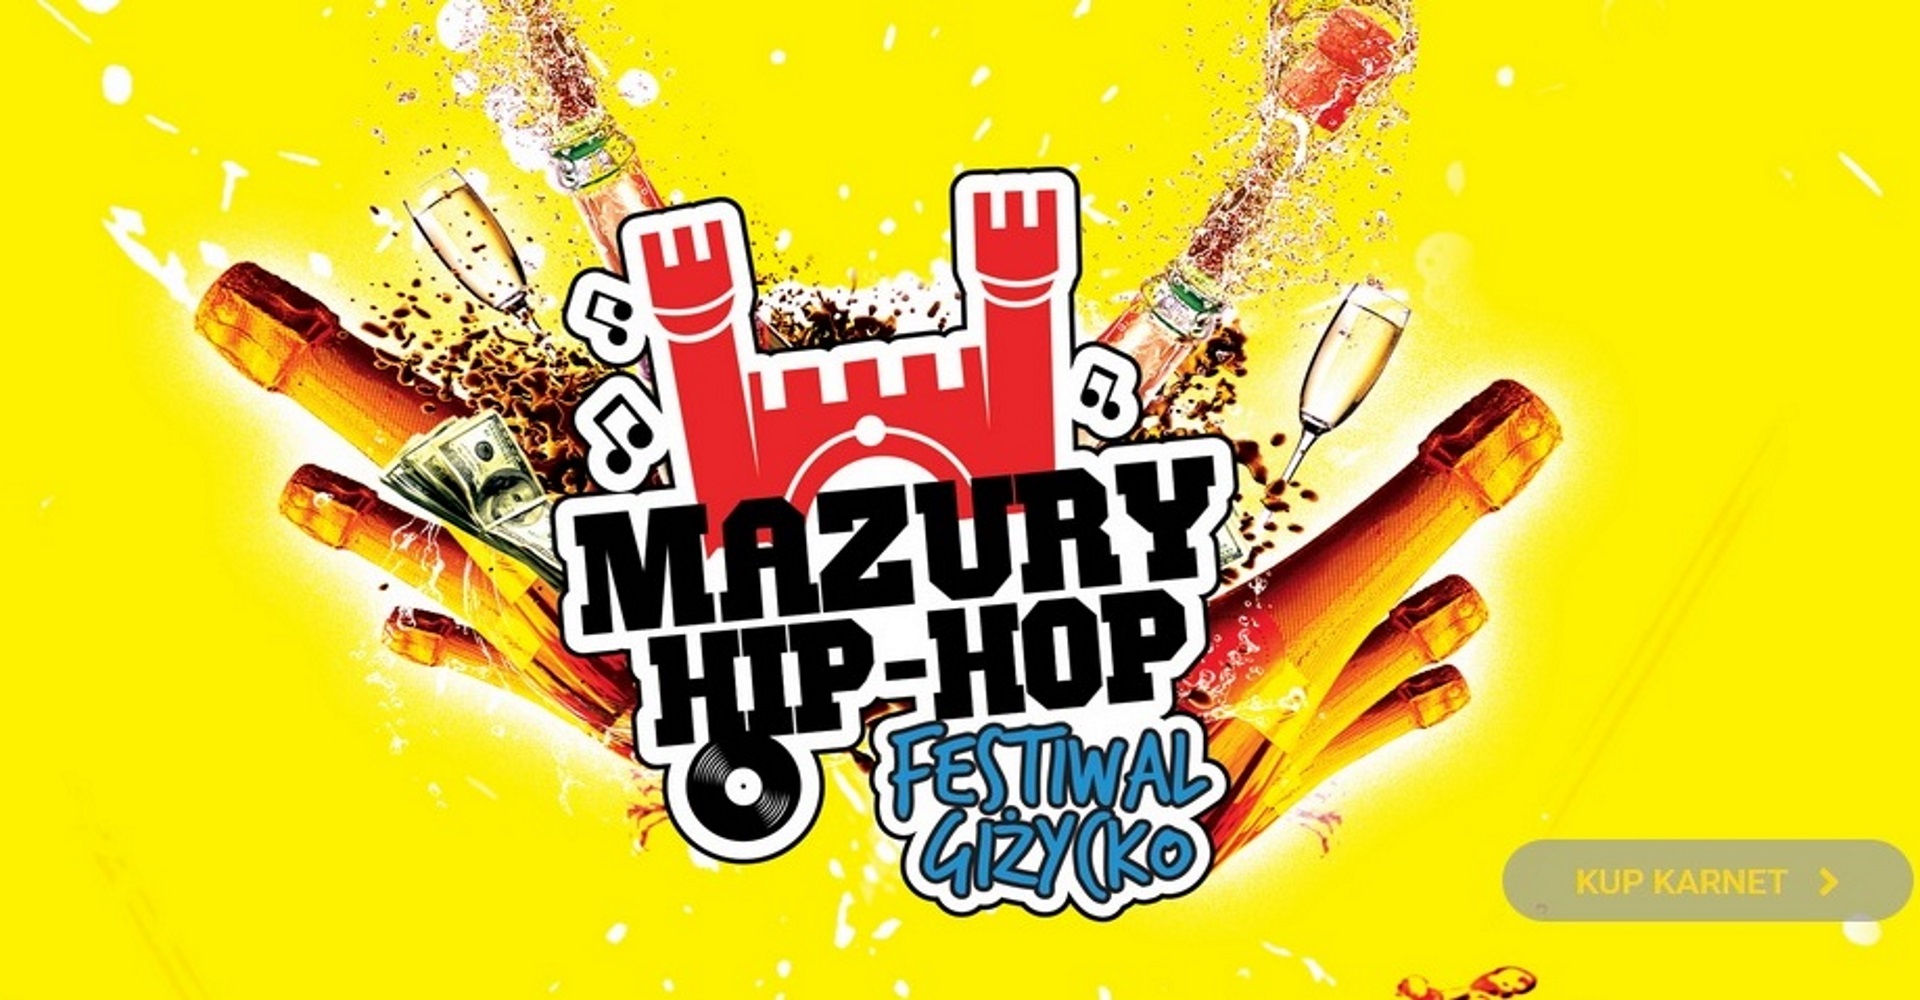 Zdjęcie to plakat zapraszający na Festiwal Mazury Hip-Hop 2020. Na plakacie graficznie pokazana brama Twierdzy Boyen w Giżycku oraz grafika butelek od szampana i kieliszków. Tło plakatu żółte.    